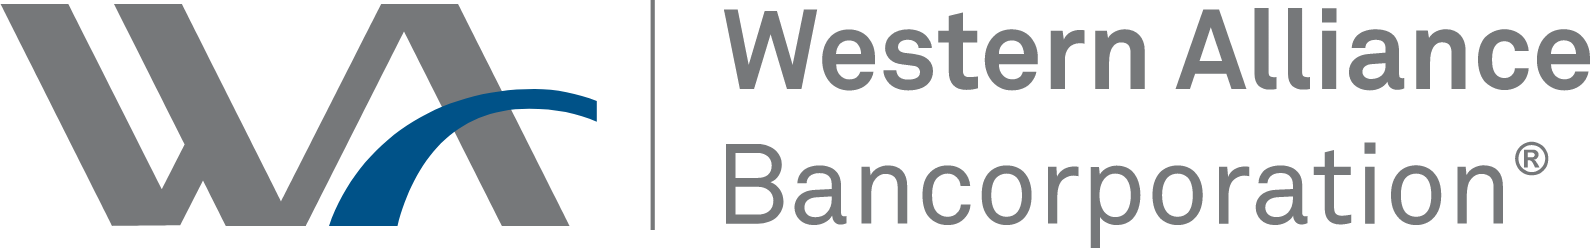 Western Alliance Bancorporation
 logo large (transparent PNG)